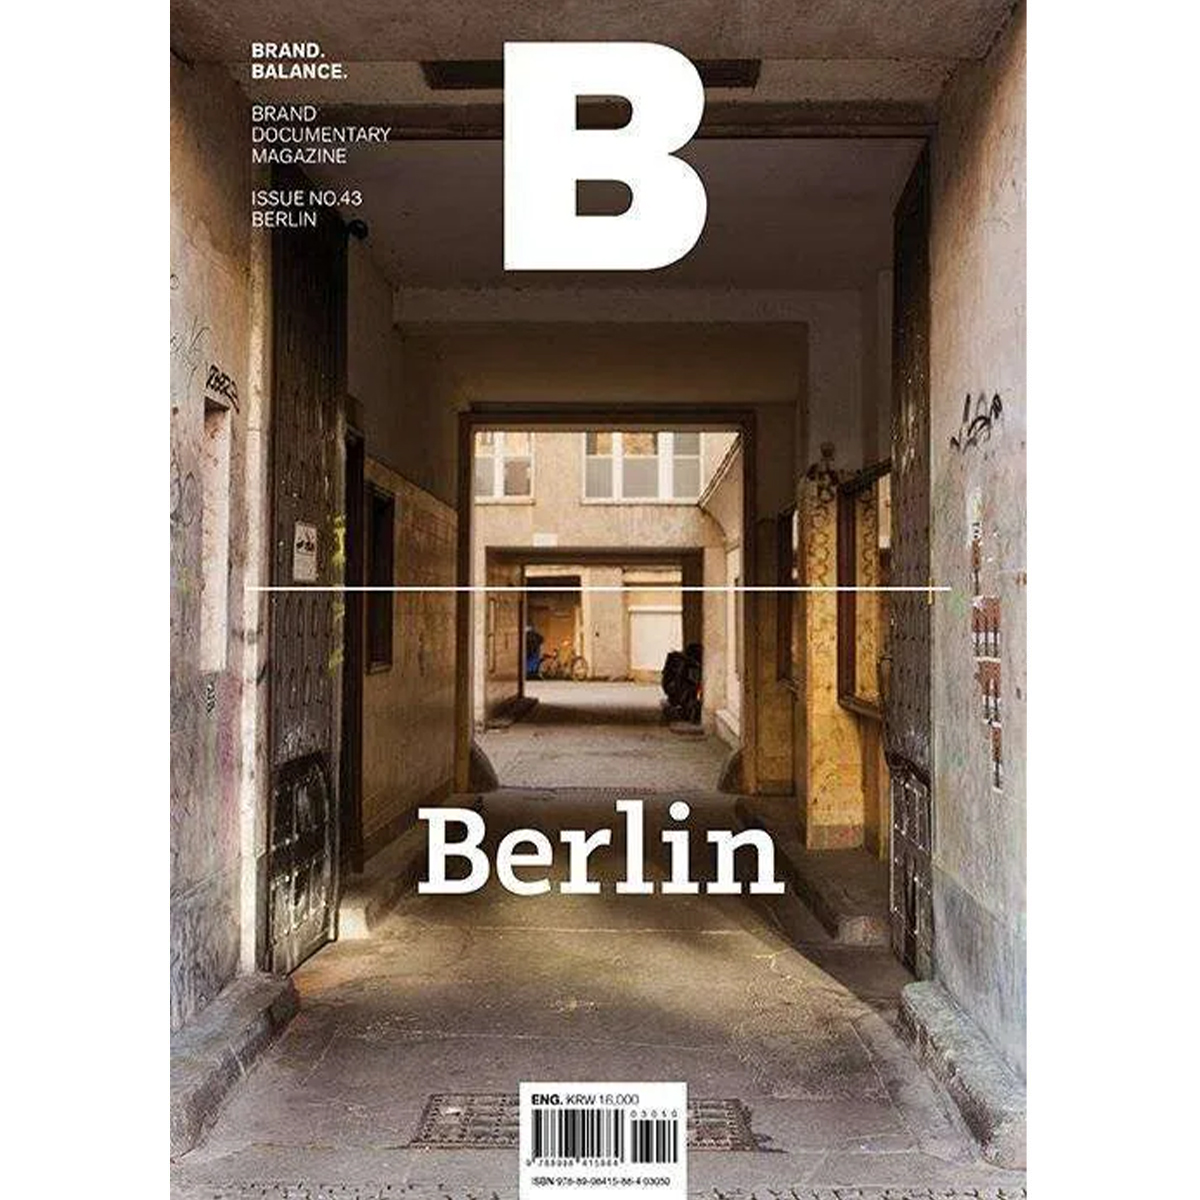 Issue N 43 BERLIN